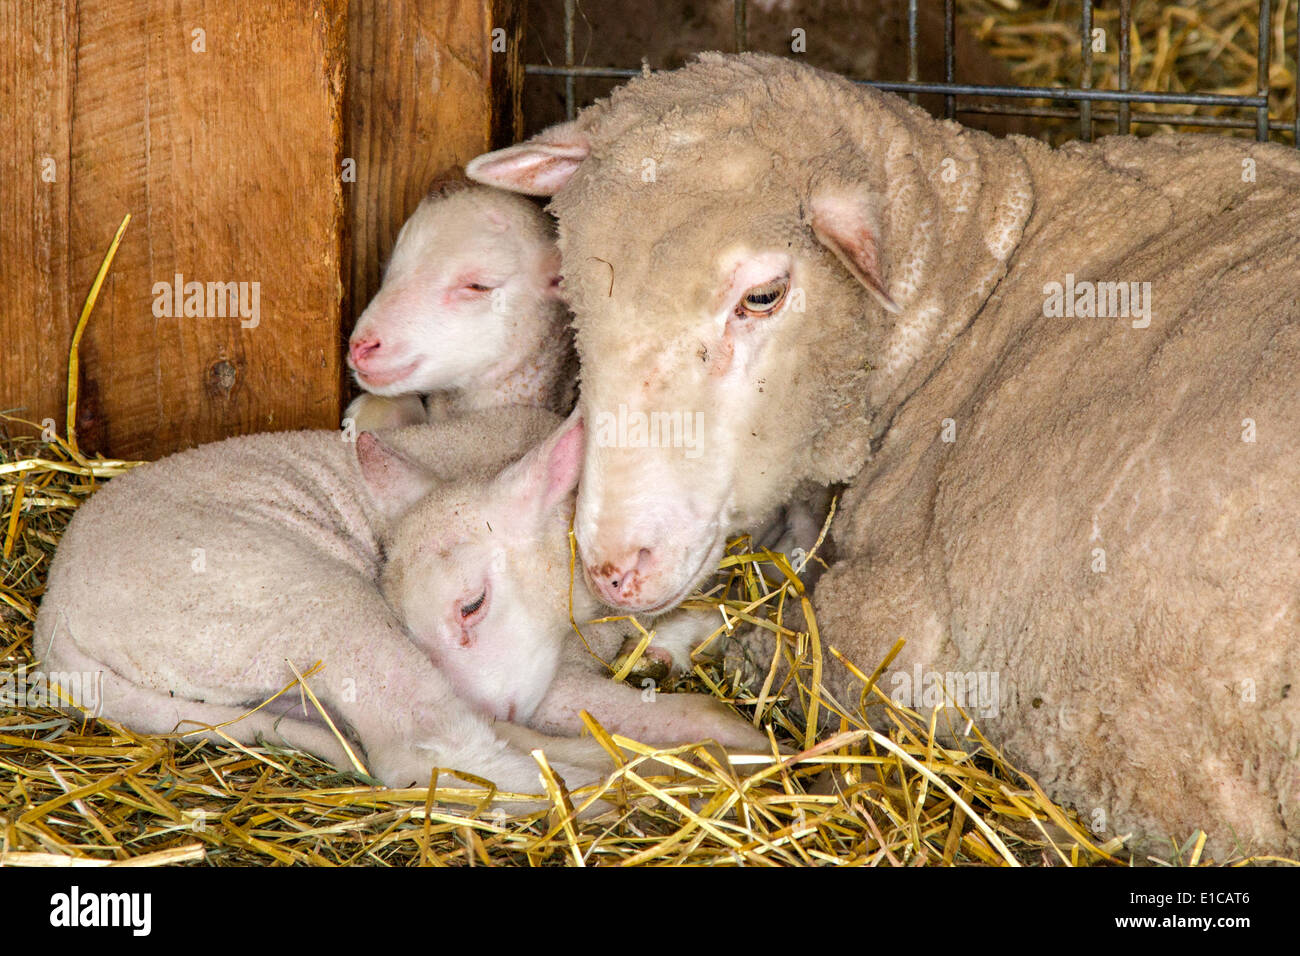 Pose à côté de ses deux brebis agneaux bébé Banque D'Images